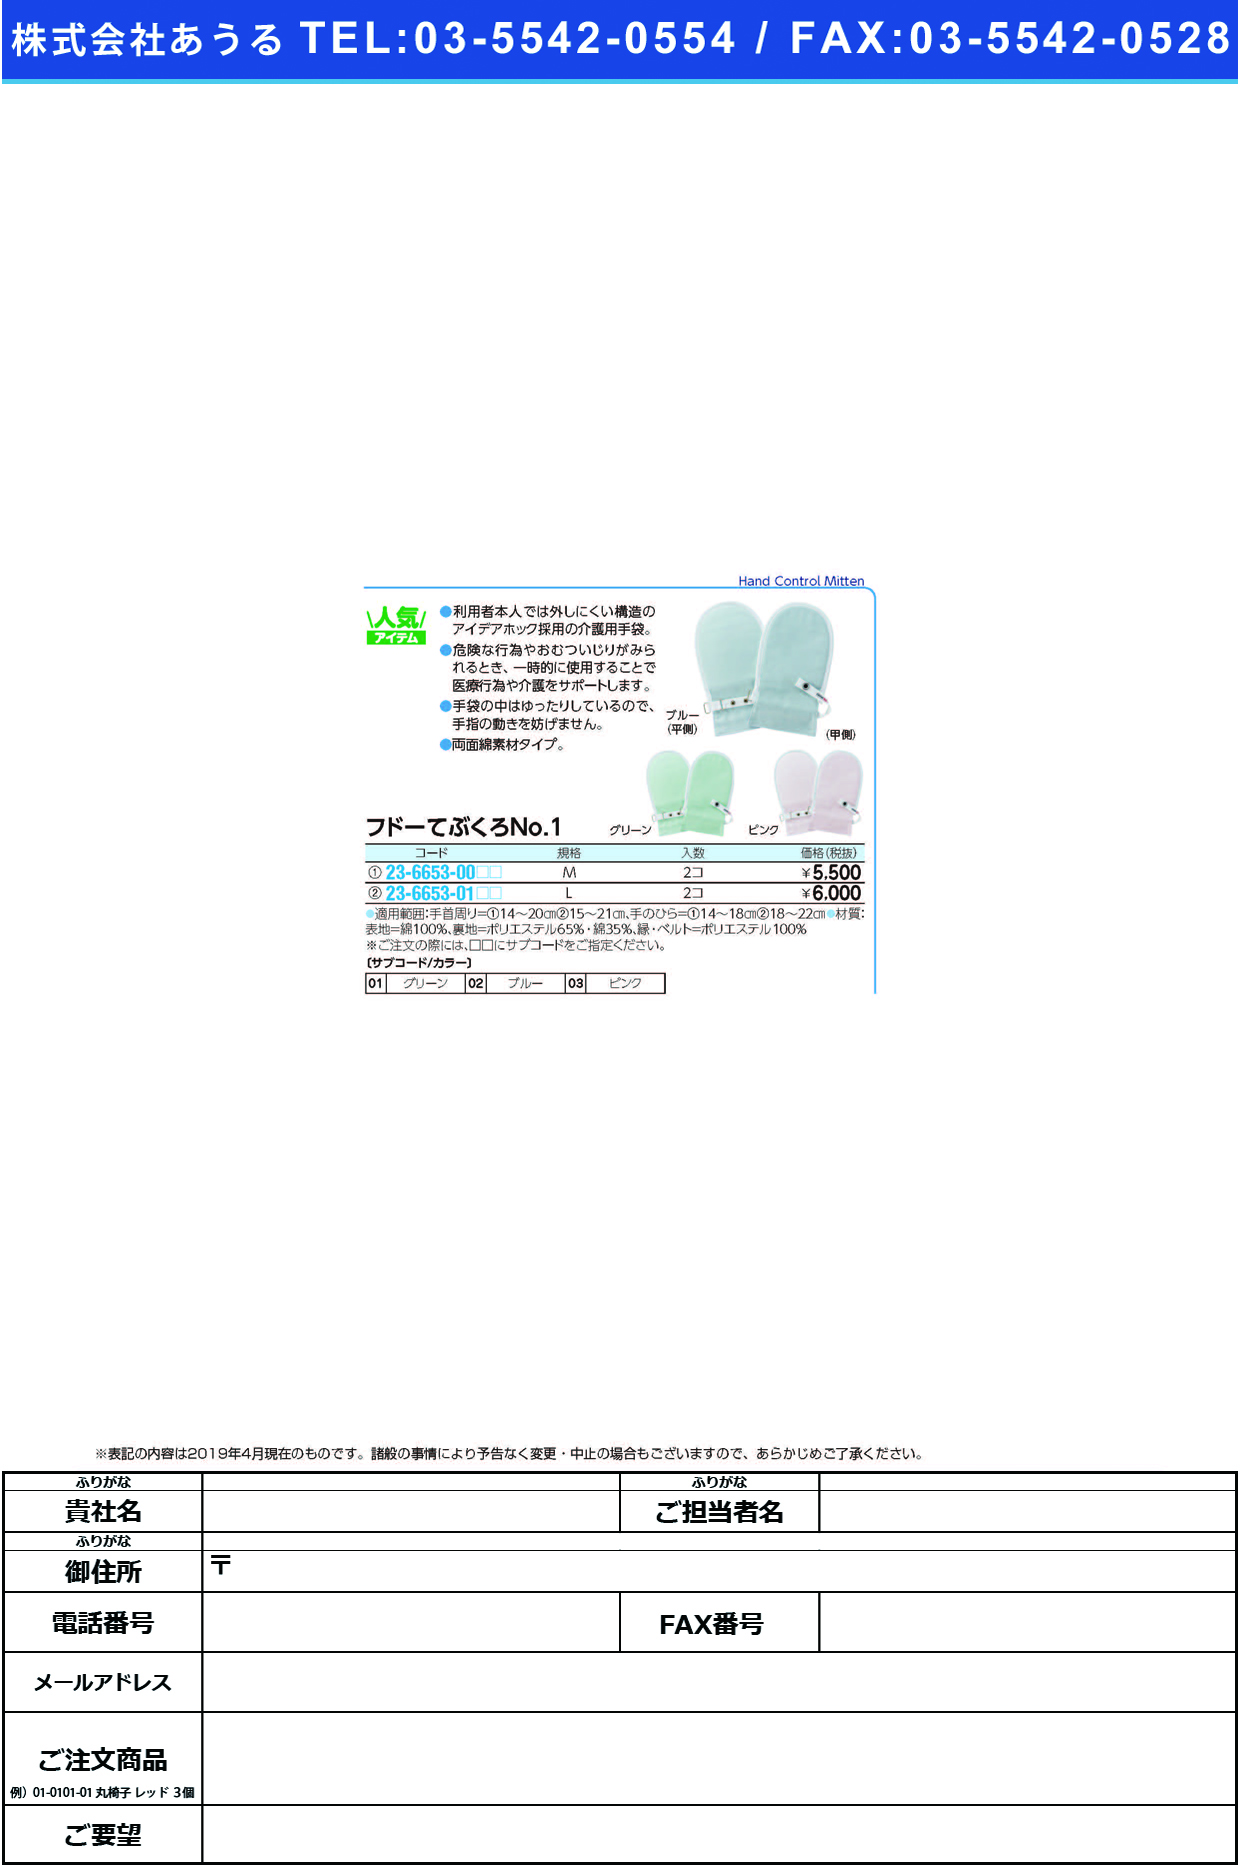 (23-6653-00)フドーてぶくろＮｏ．１ M(2ﾏｲｲﾘ) ﾌﾄﾞｰﾃﾌﾞｸﾛNO1 ピンク【1双単位】【2019年カタログ商品】